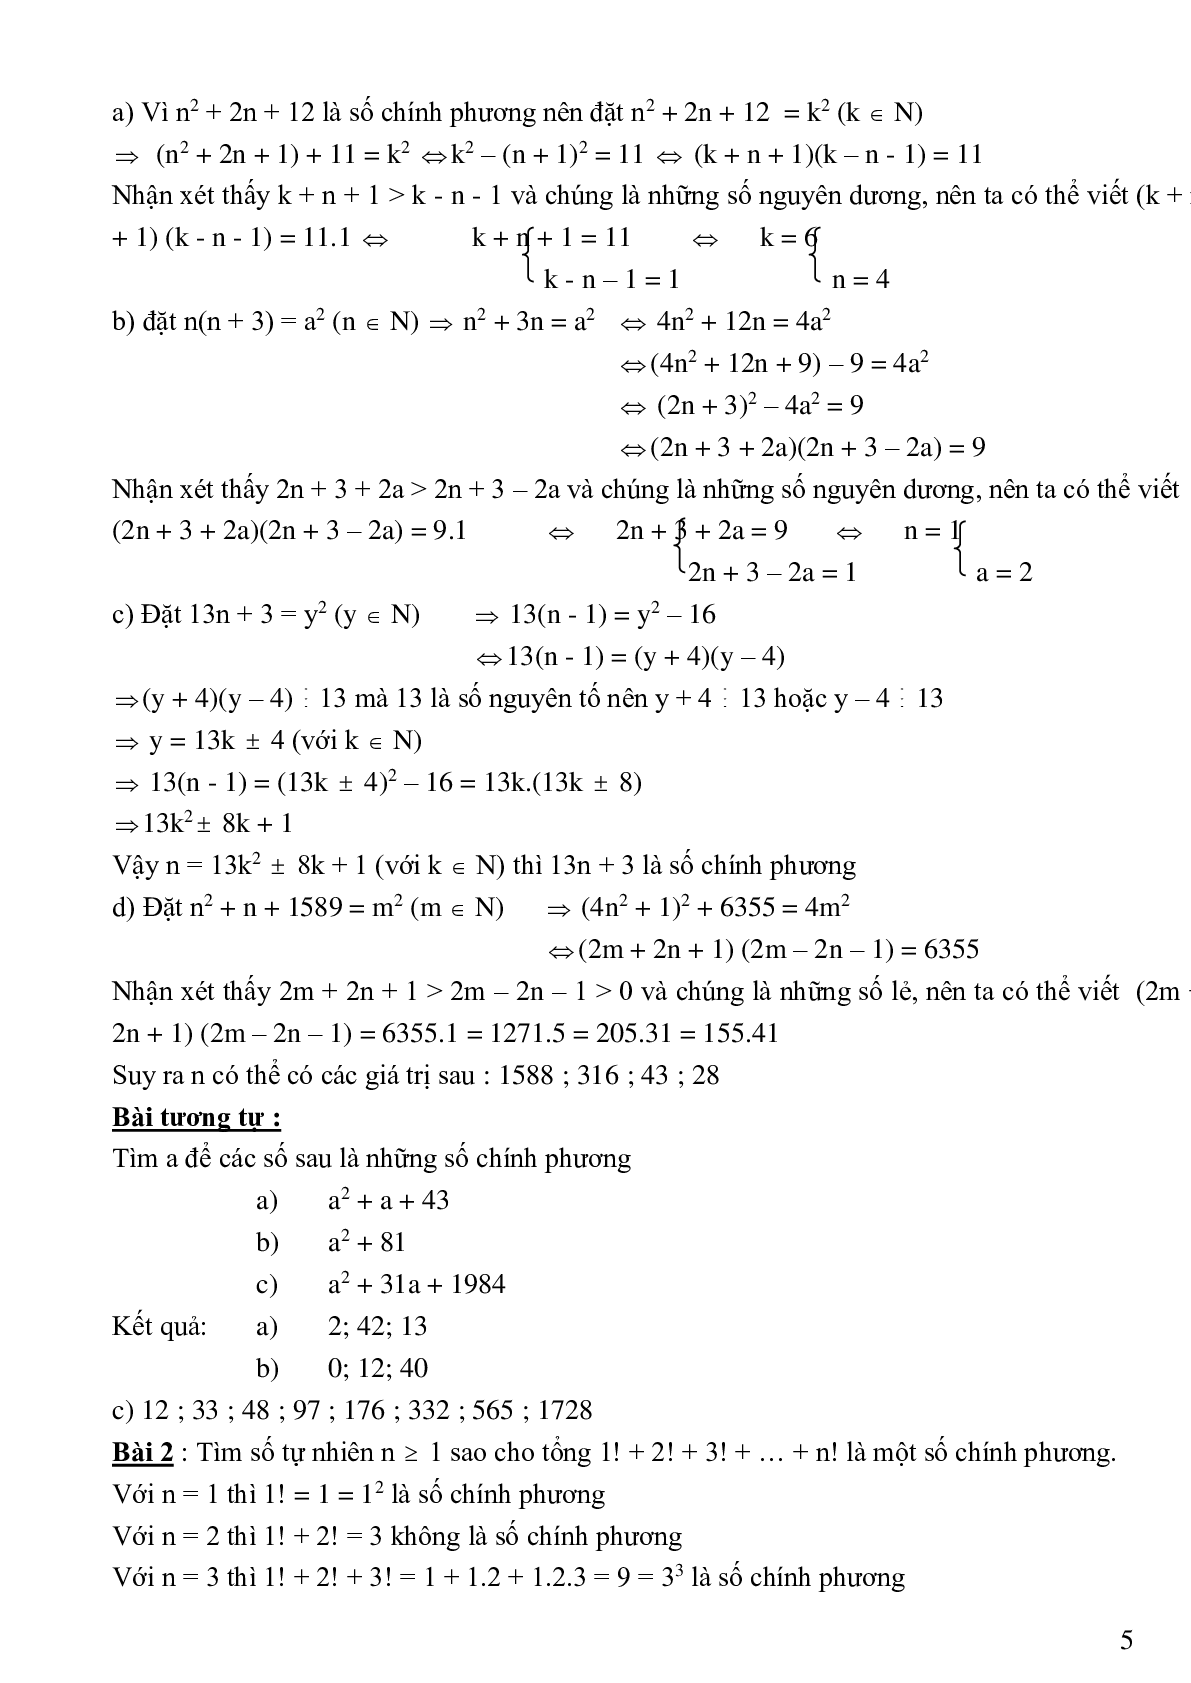 Bài tập cơ bản và nâng cao số chính phương (trang 5)